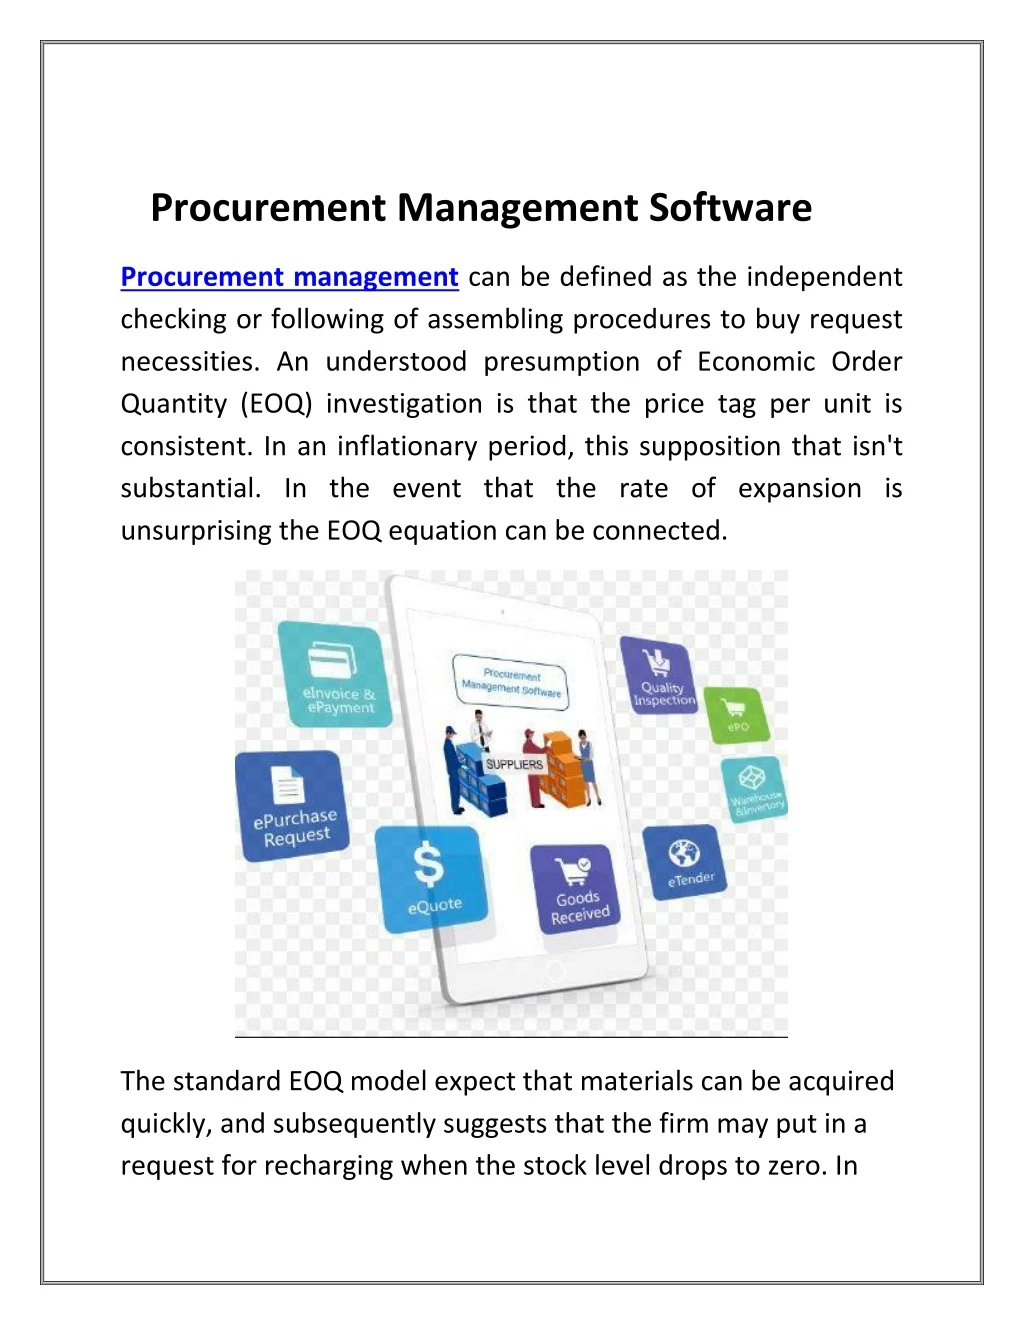 procurement management software procurement